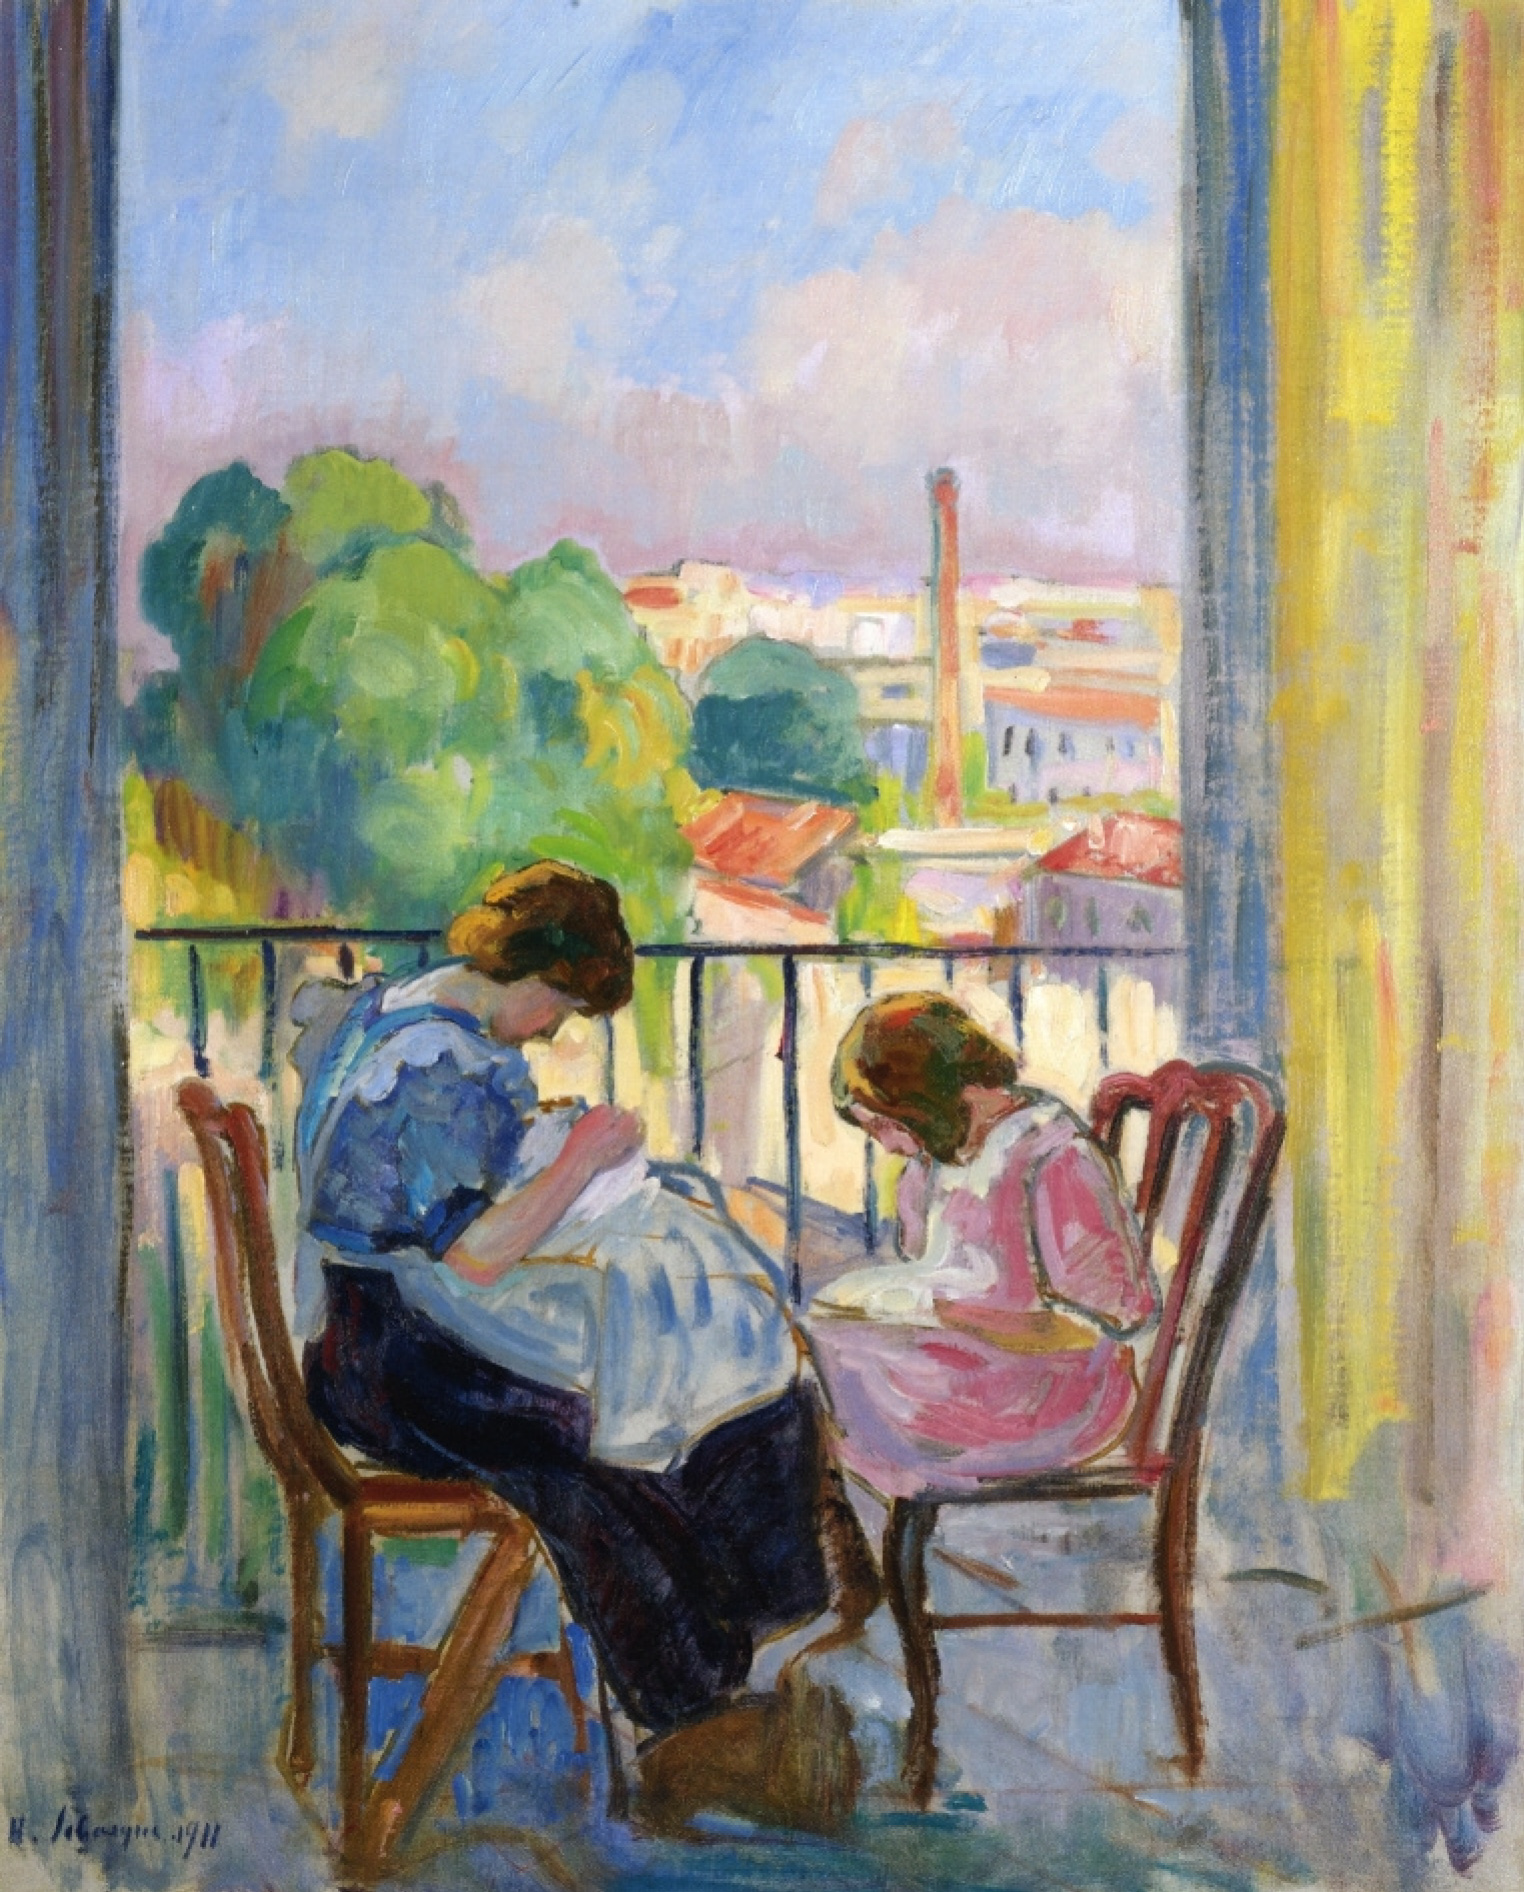 Анри Лебаск (1865 - 1937). Анри Лебаск у окна картина. Анри Лебаск Henri Lebasque. Анри Лебаск девушка шьющая у окна. Сюжет каждого дня